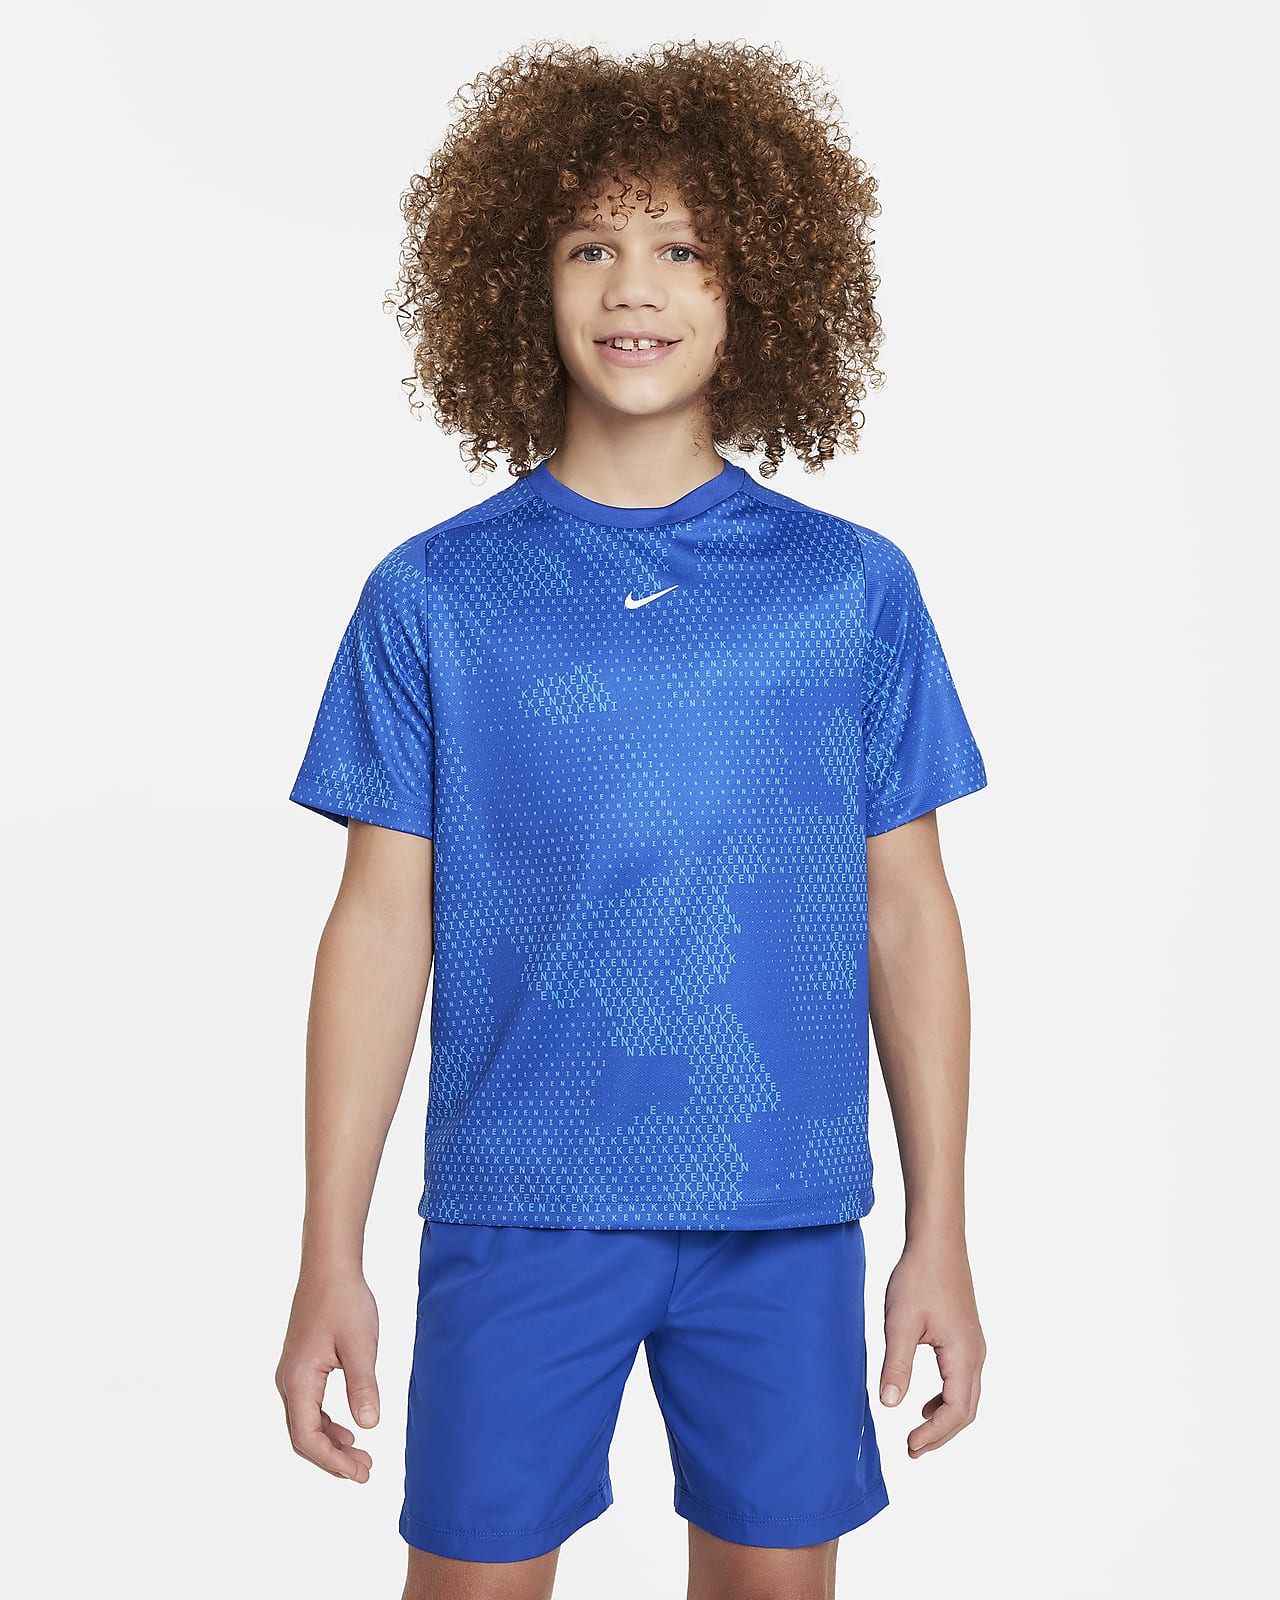 Nike Multi jongenstop met Dri-FIT en korte mouwen